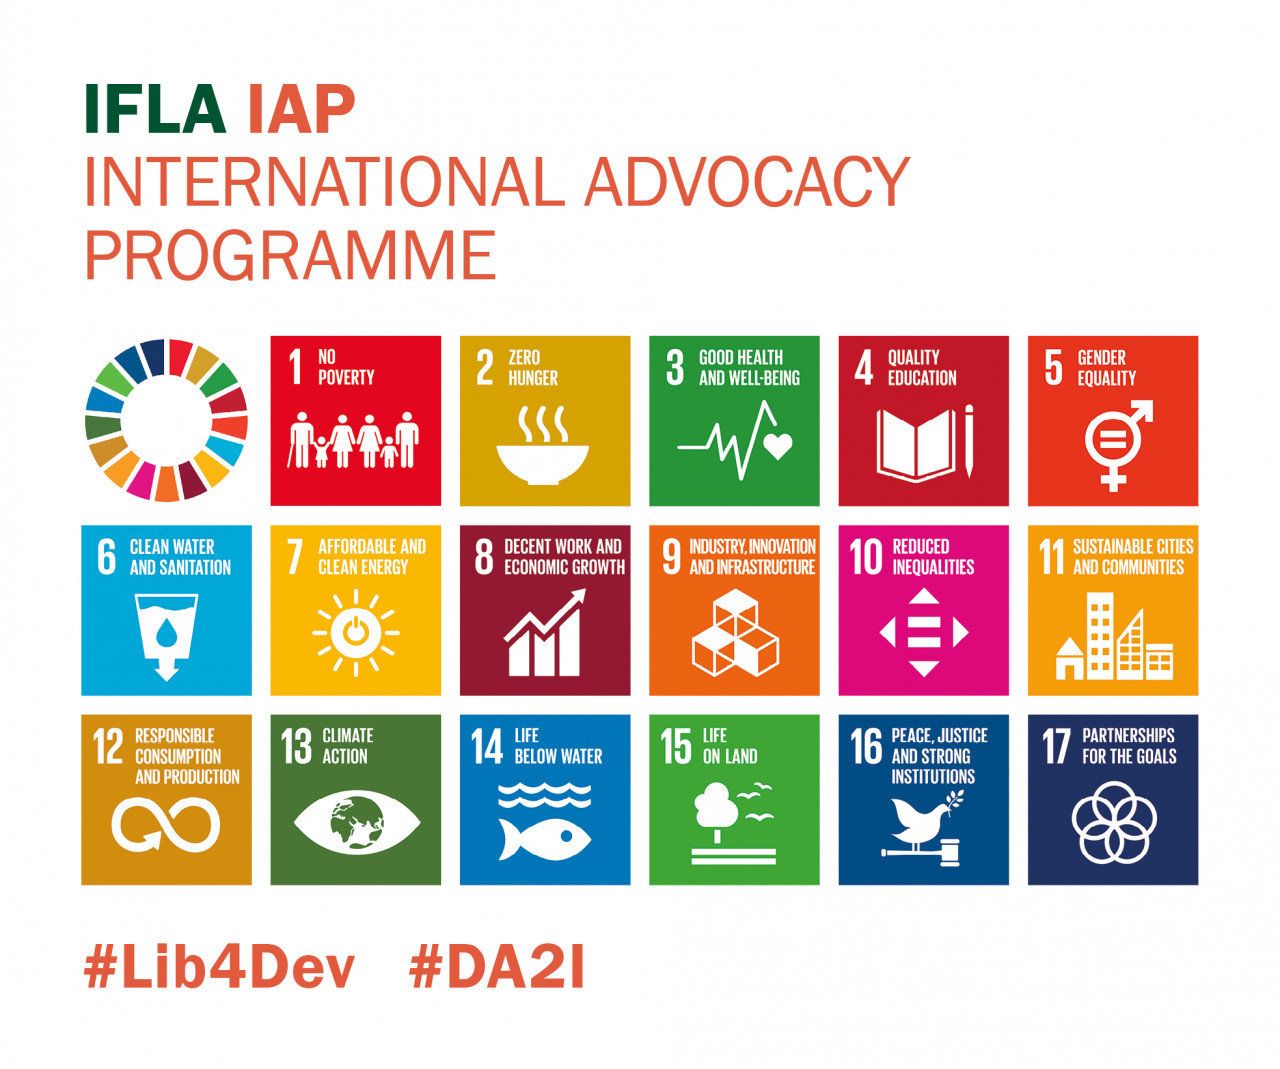 IFLA International Advocacy Programme (IAP)